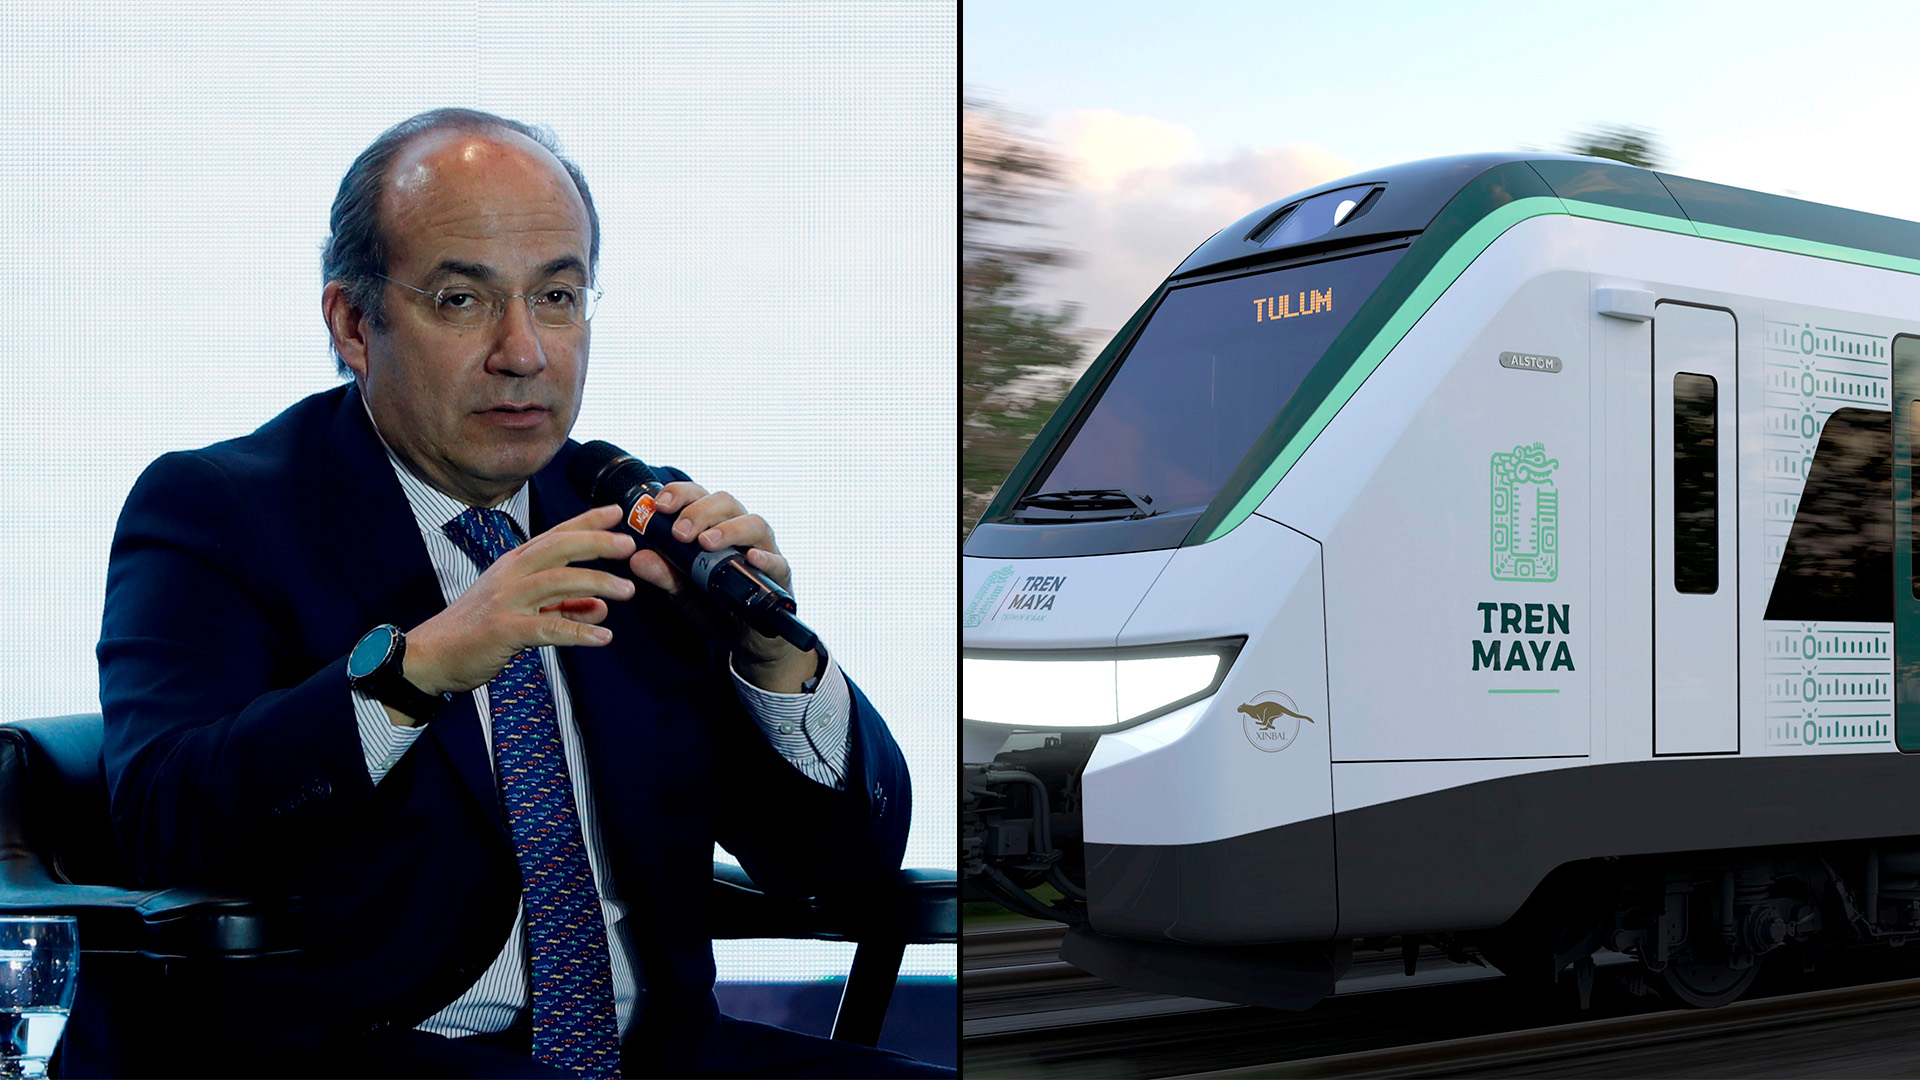 “Totalmente desquiciado”: Felipe Calderón se lanzó en contra del Tren Maya